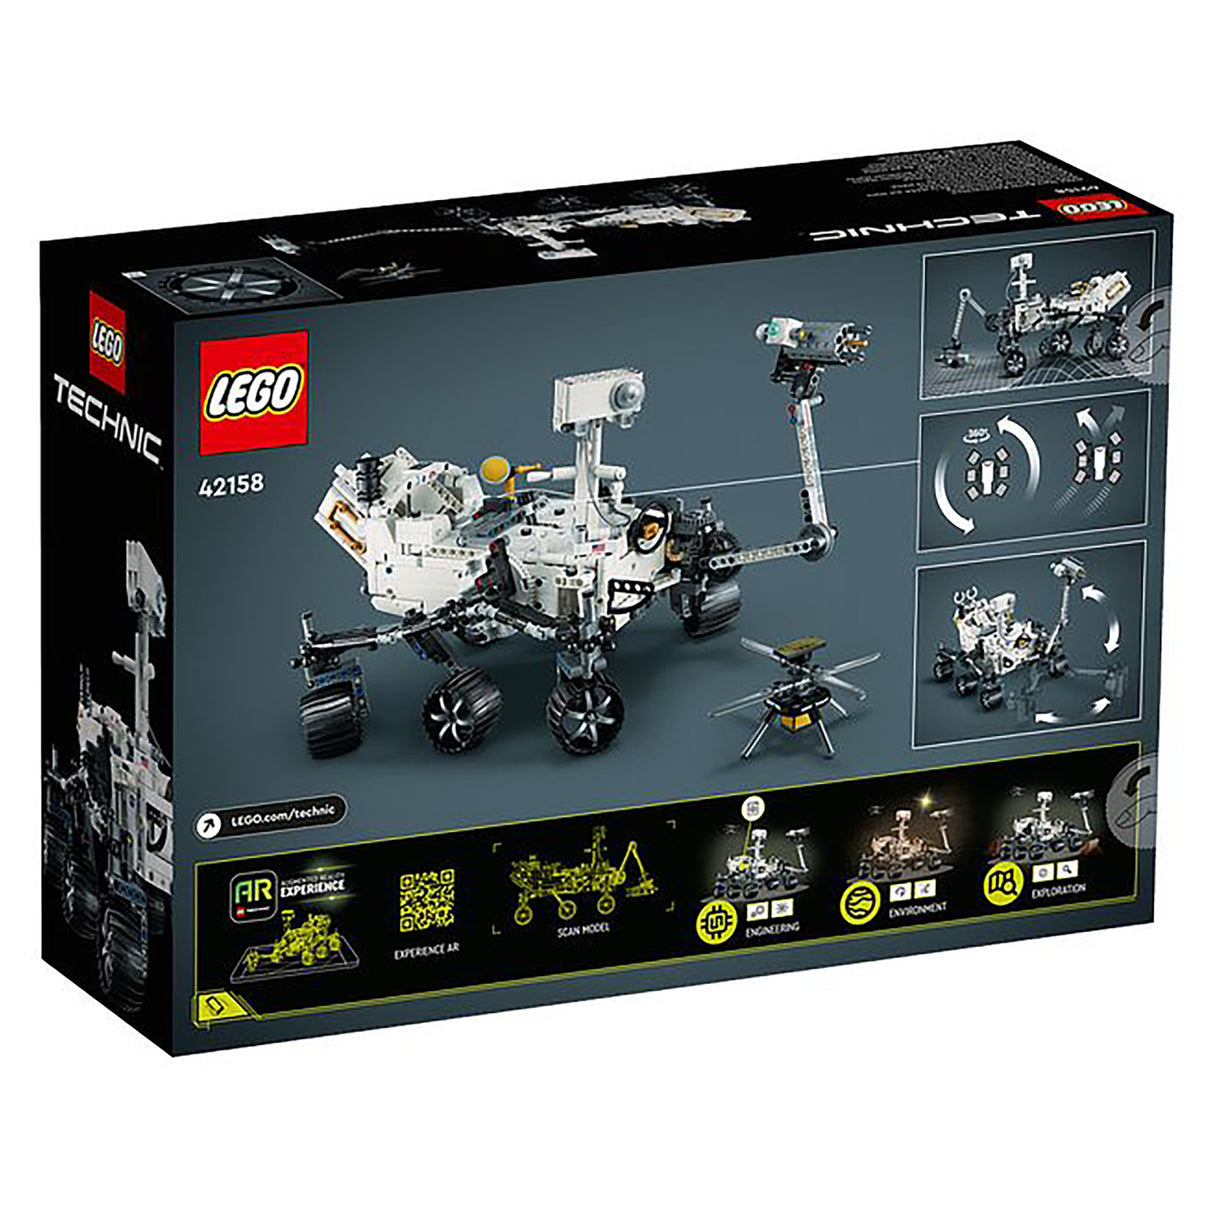 LEGO Technic NASA Mars Rover Perseverance 42158 (1132 pieces)